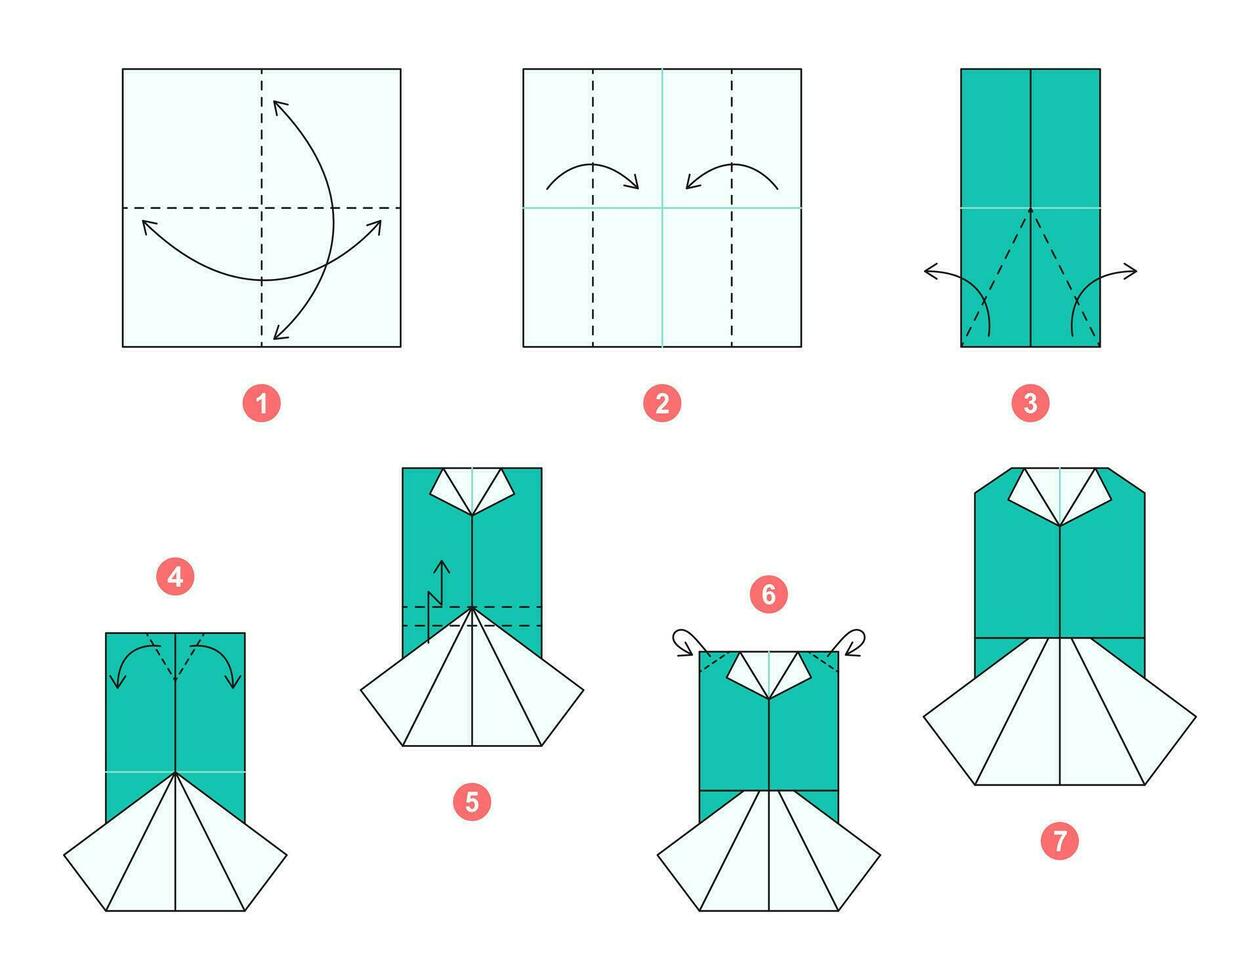 blouse en rok origami regeling zelfstudie in beweging model. origami voor kinderen. stap door stap hoe naar maken een schattig origami kleding. vector illustratie.